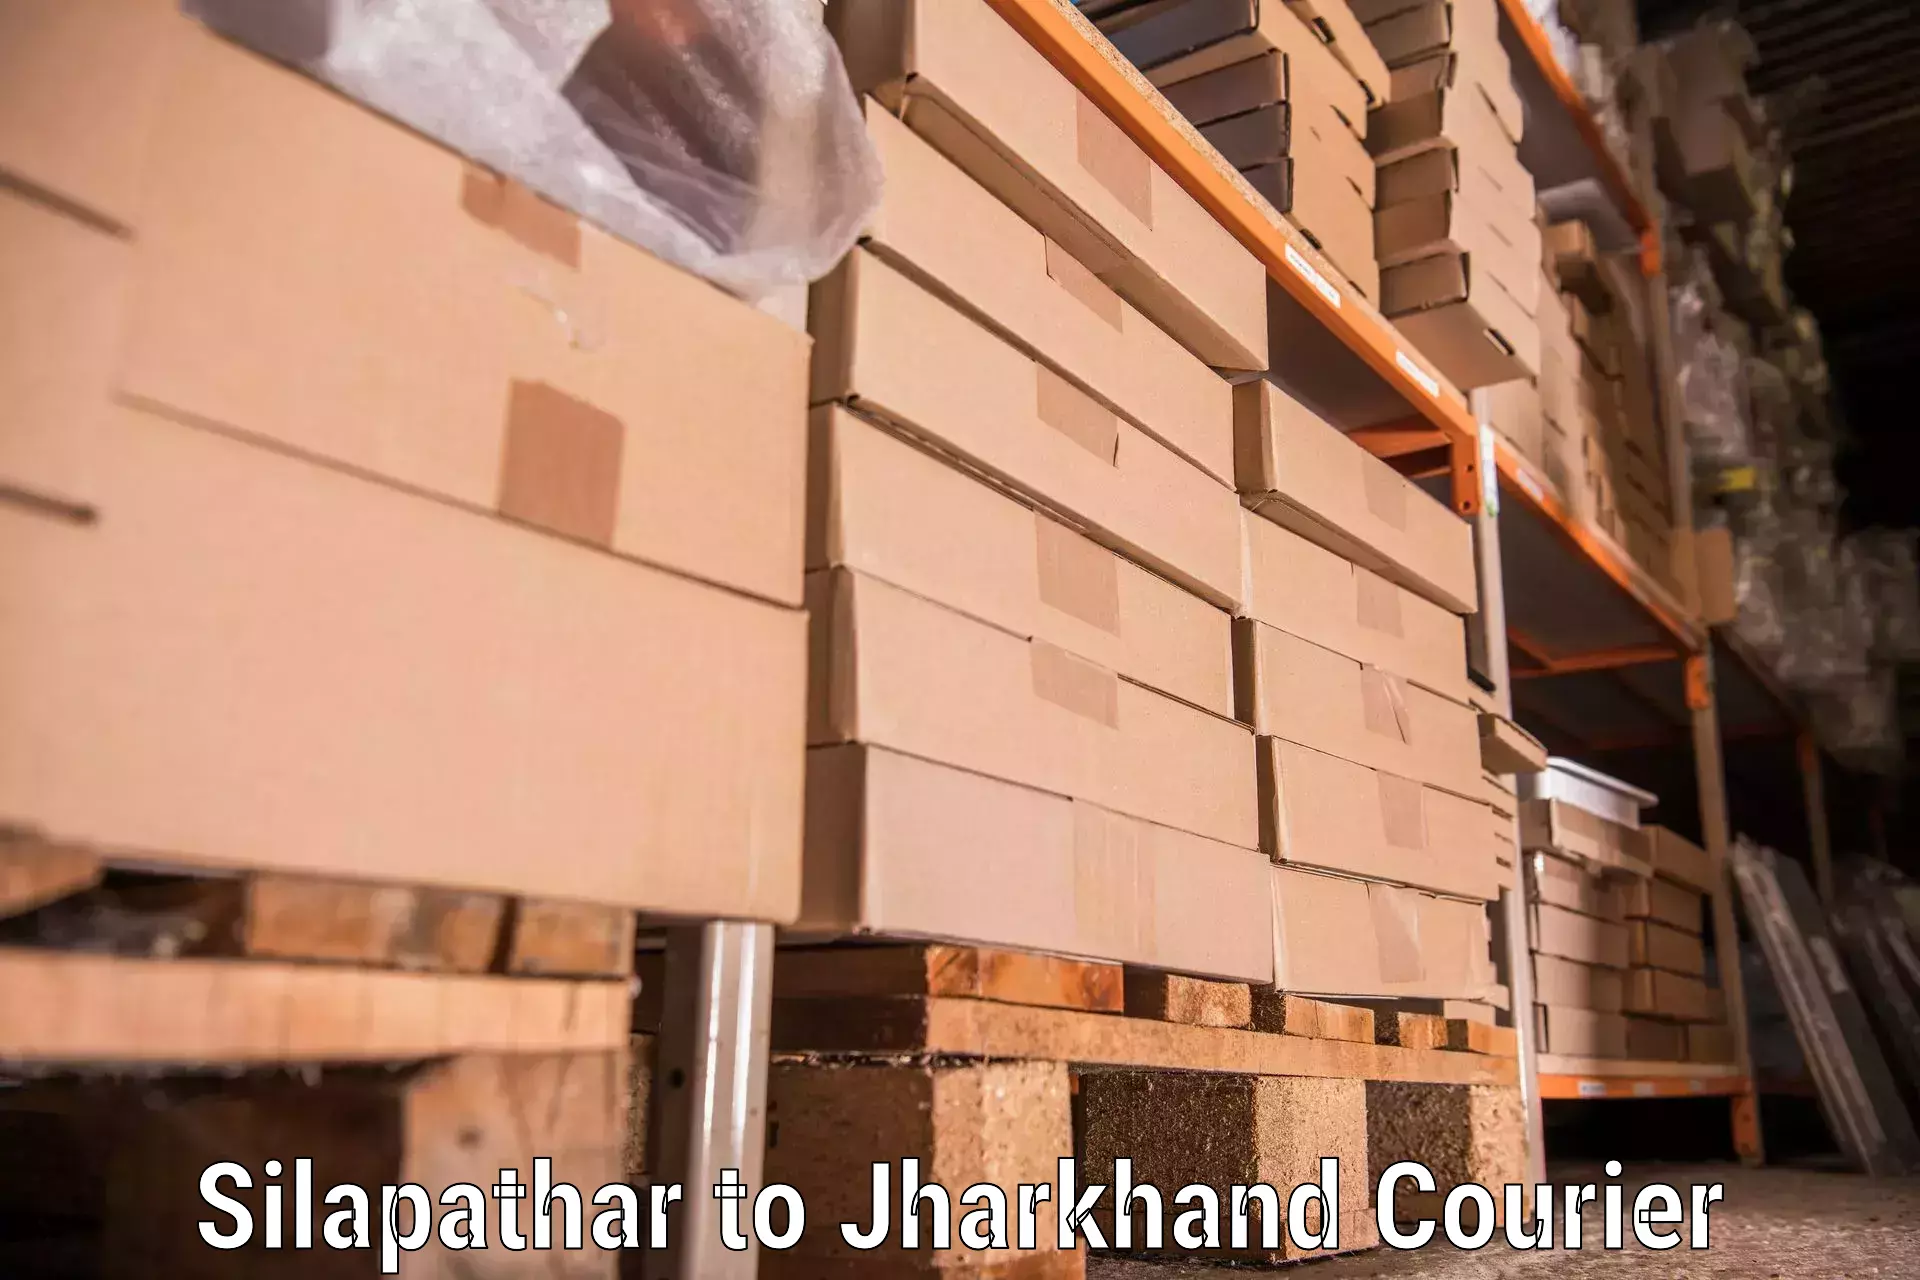 Furniture transport experts Silapathar to Lohardaga